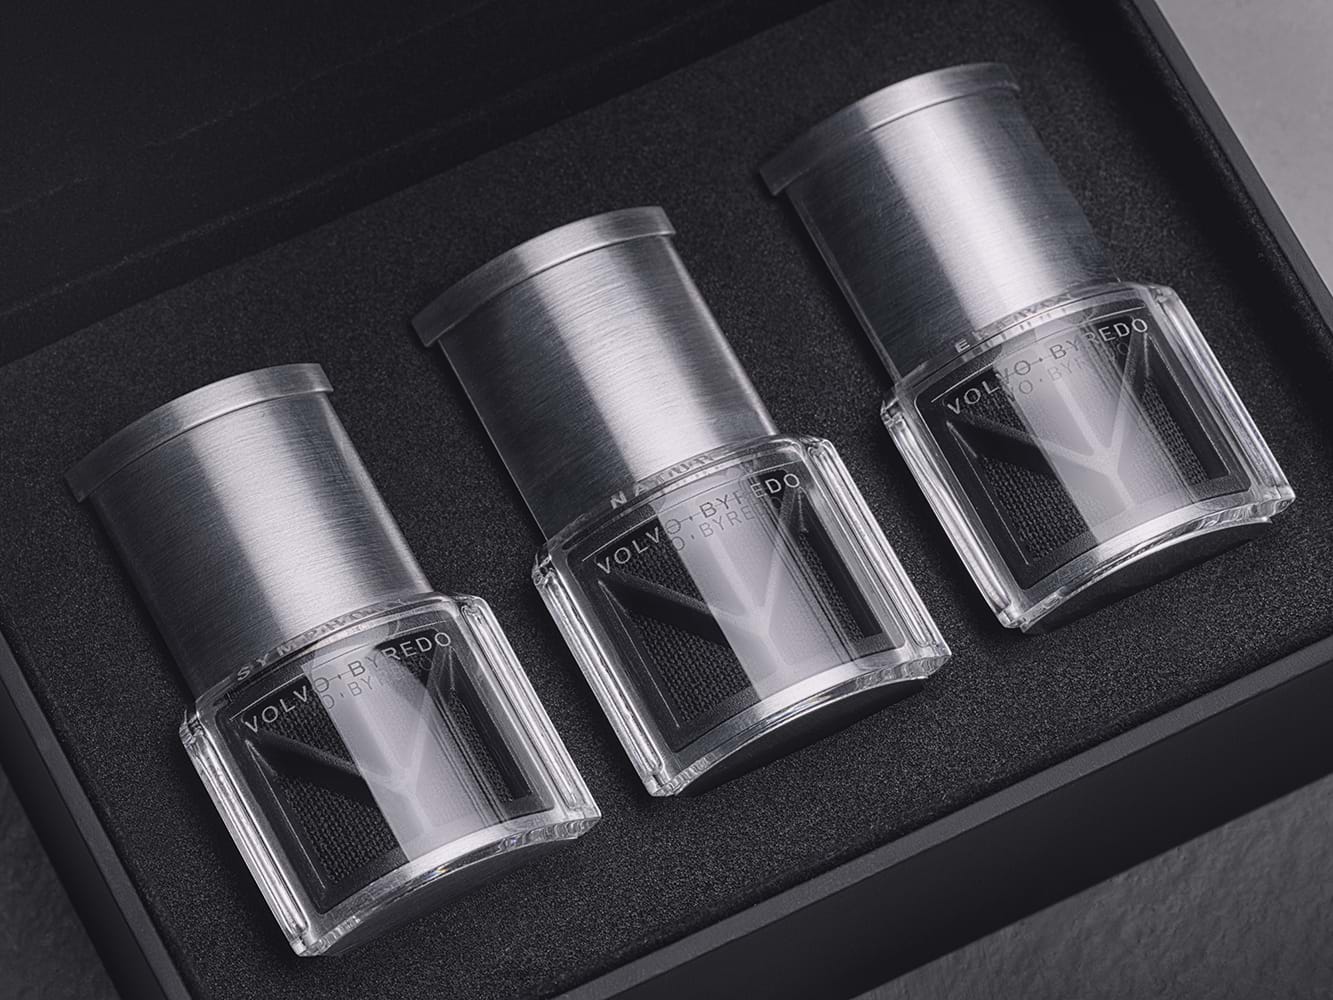 Boîte contenant trois petits flacons de parfum Byredo conçus pour le concept d'ambiance intérieure d'une voiture Volvo.